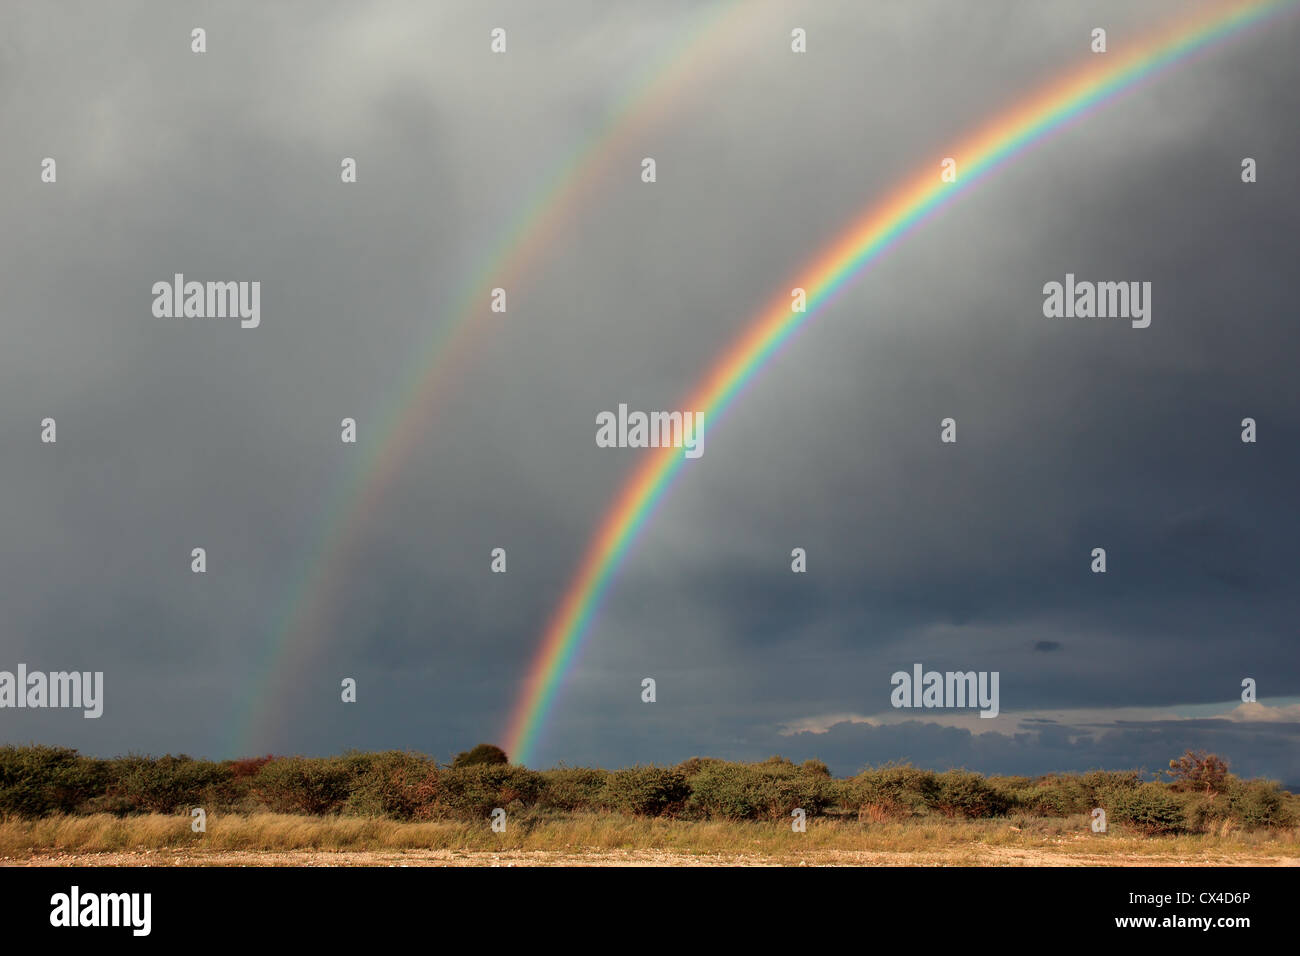 Paysage rural avec un arc-en-ciel coloré et lourds nuages de pluie, le sud de l'Afrique Banque D'Images